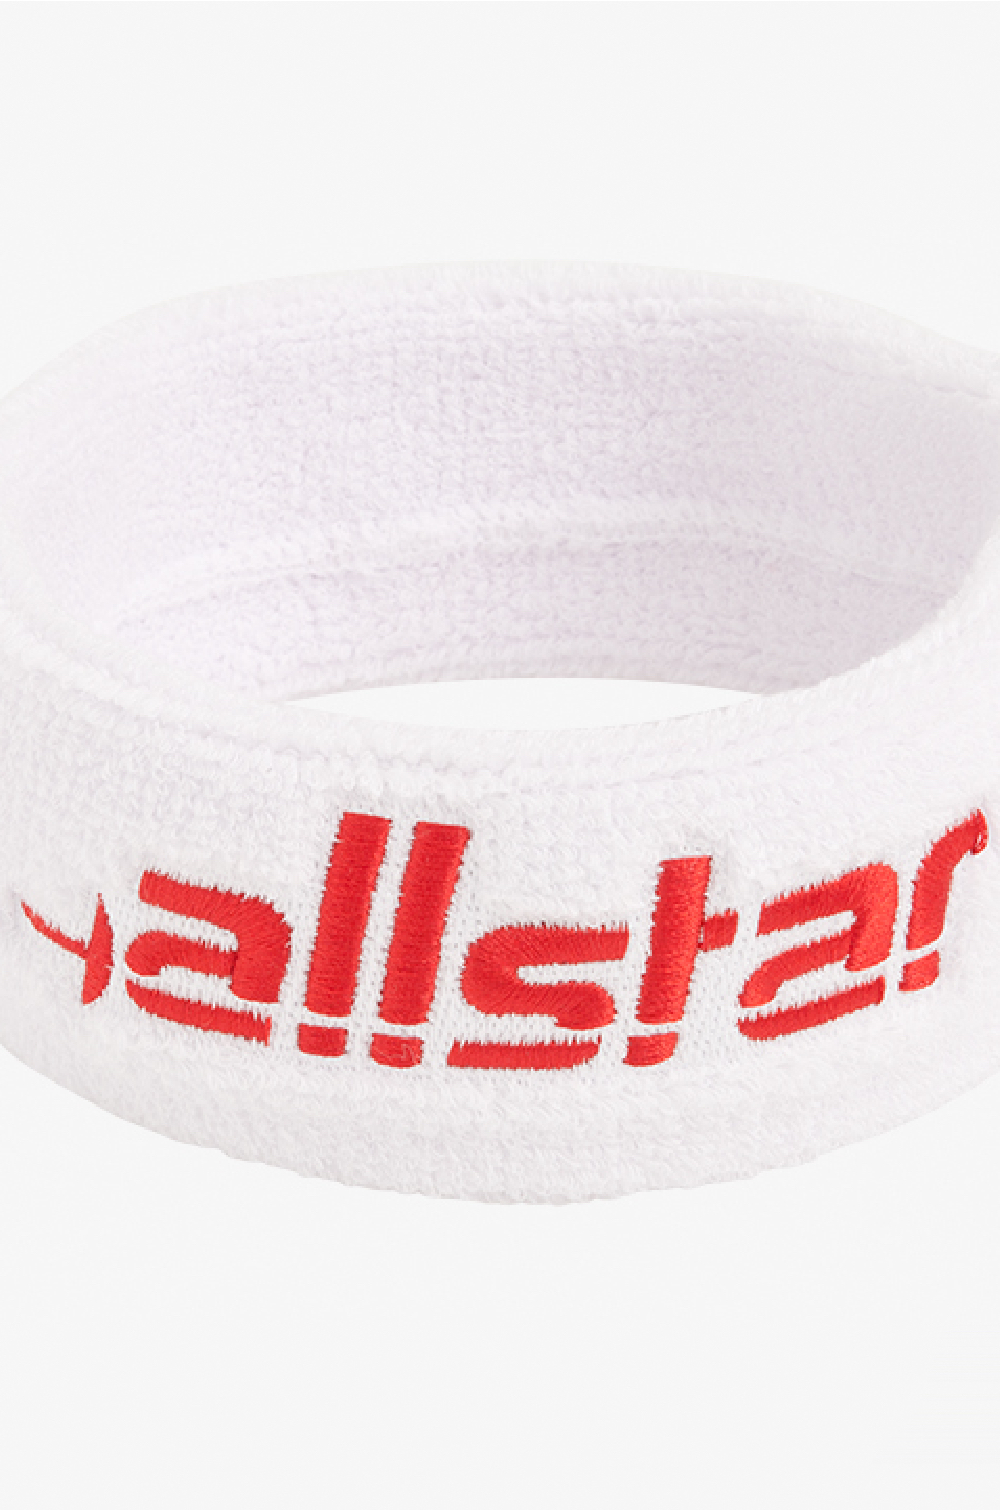 Allstar-Stirnband